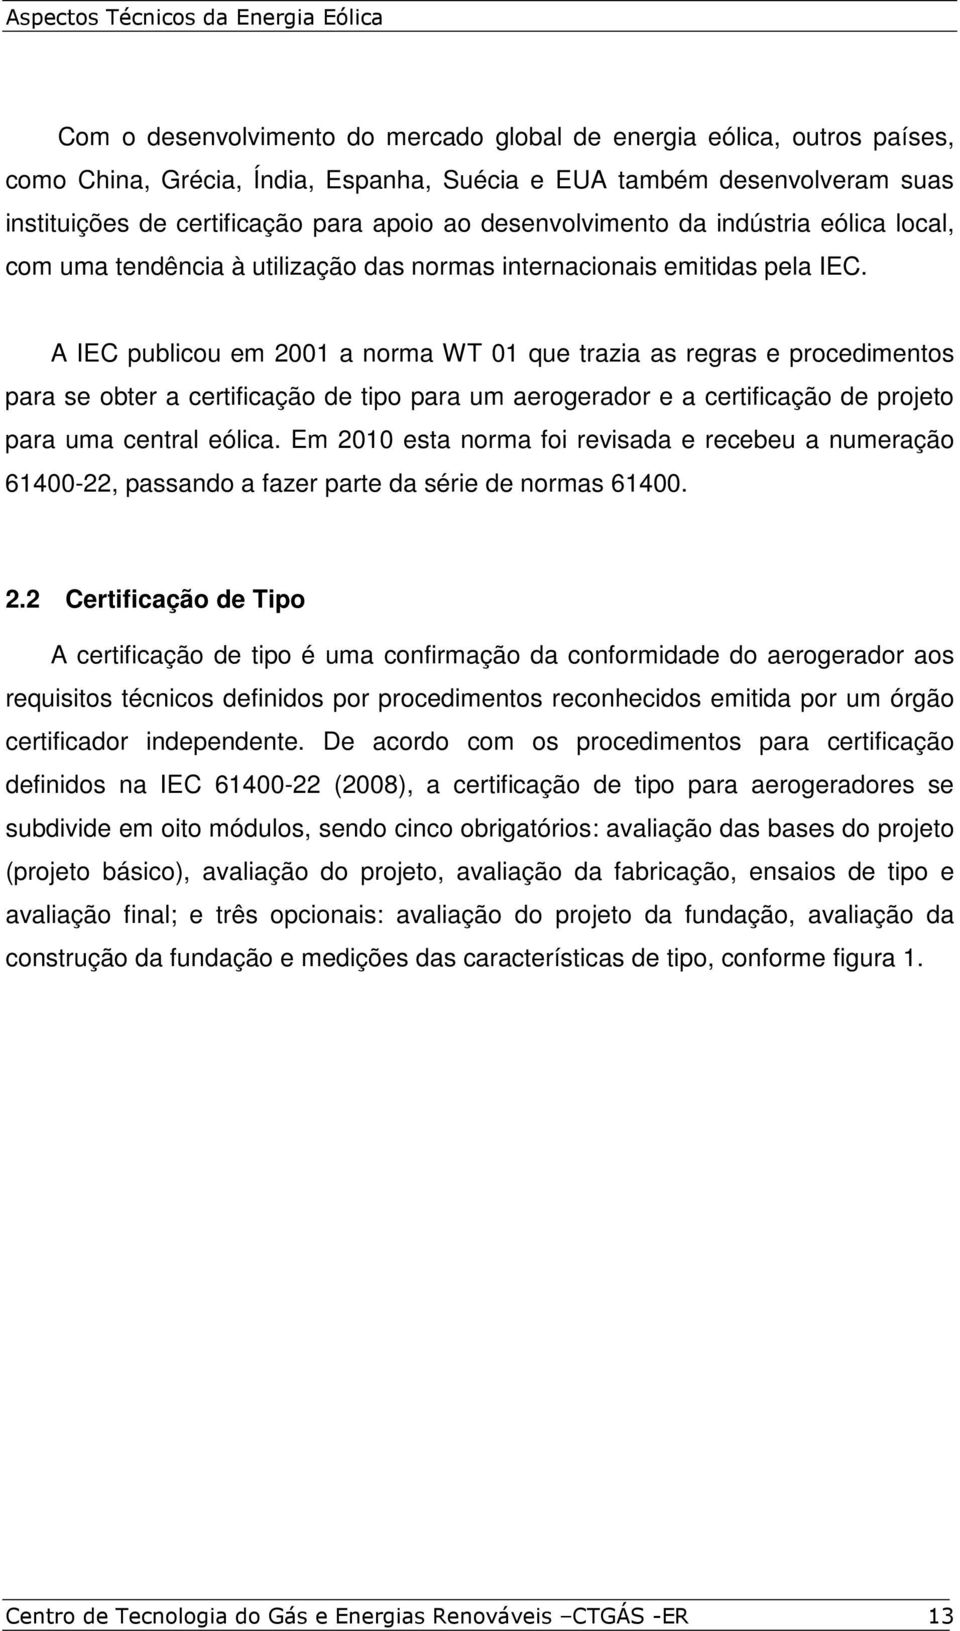 A IEC publicou em 2001 a norma WT 01 que trazia as regras e procedimentos para se obter a certificação de tipo para um aerogerador e a certificação de projeto para uma central eólica.